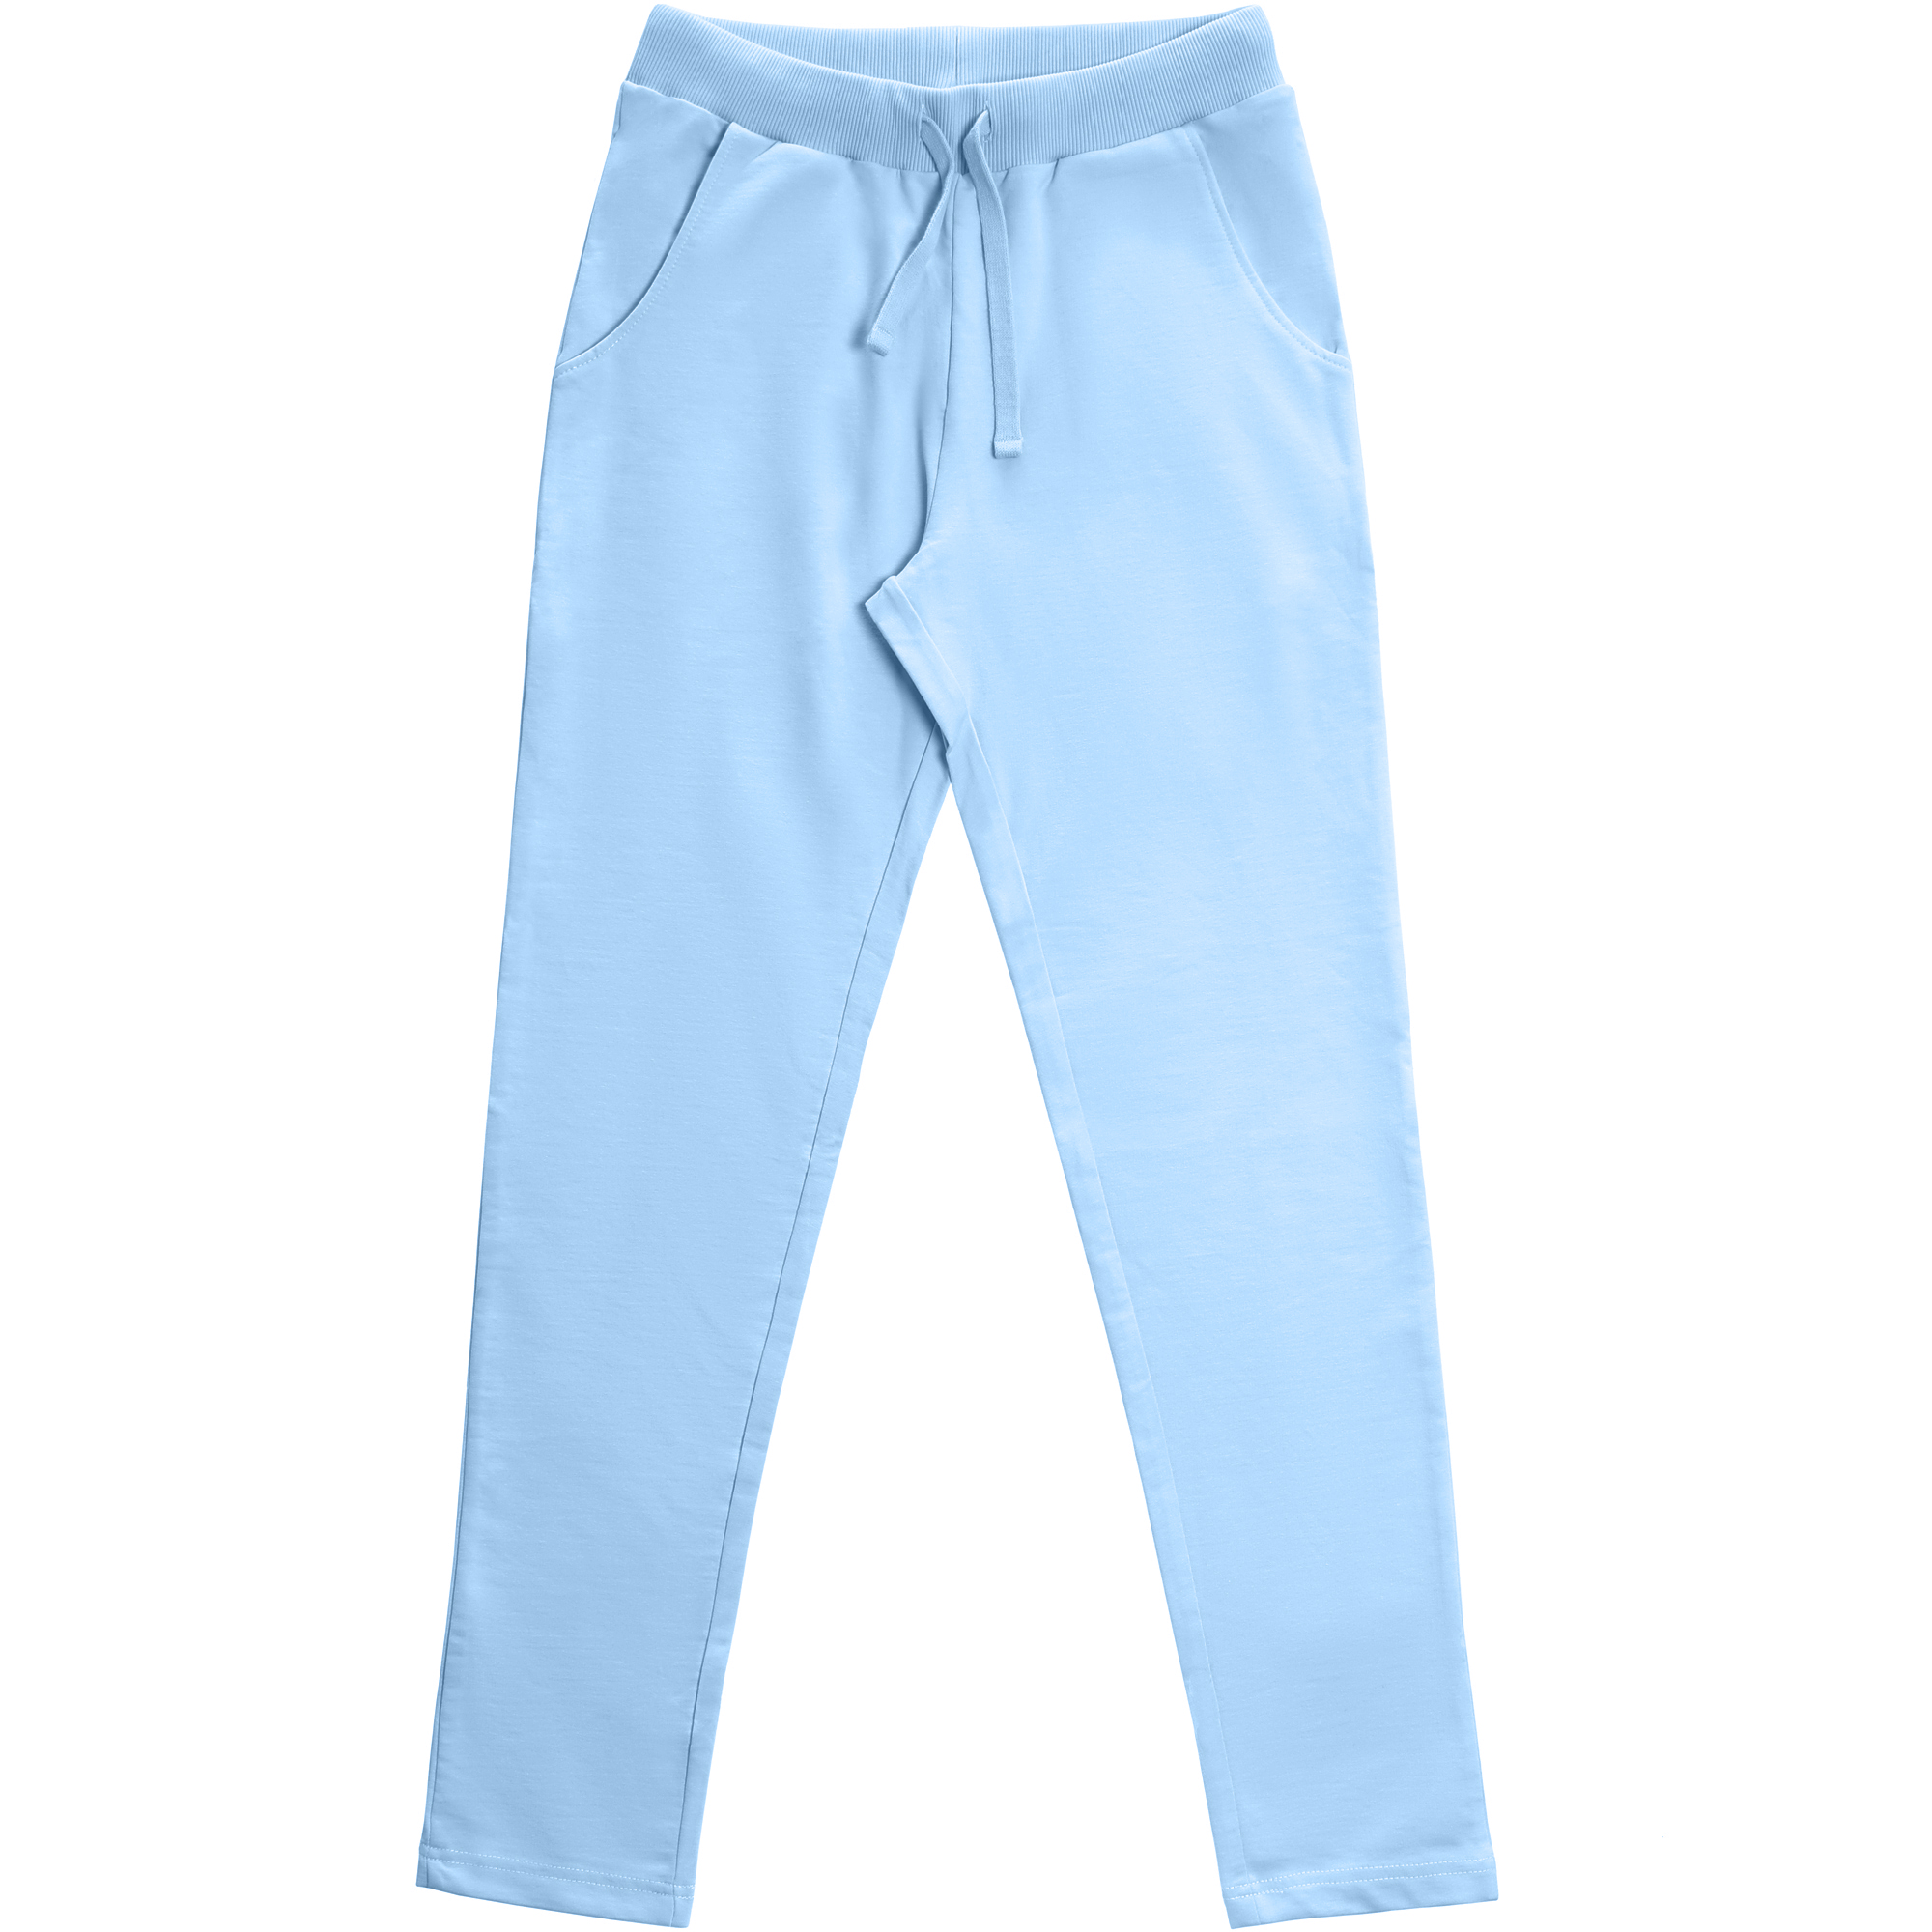 Женские брюки Birlik голубые, цвет голубой, размер L - фото 1